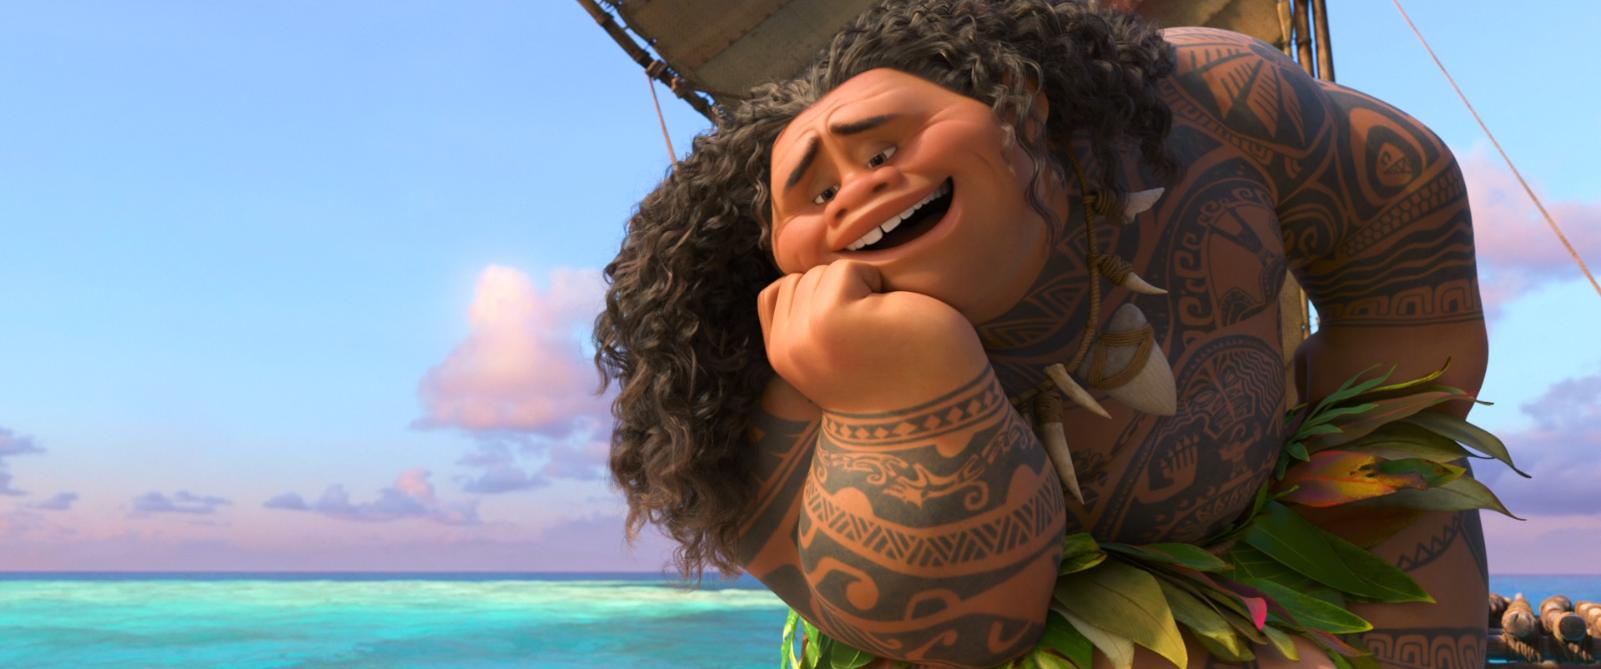 Maui character, list movies (Moana) - SolarMovie